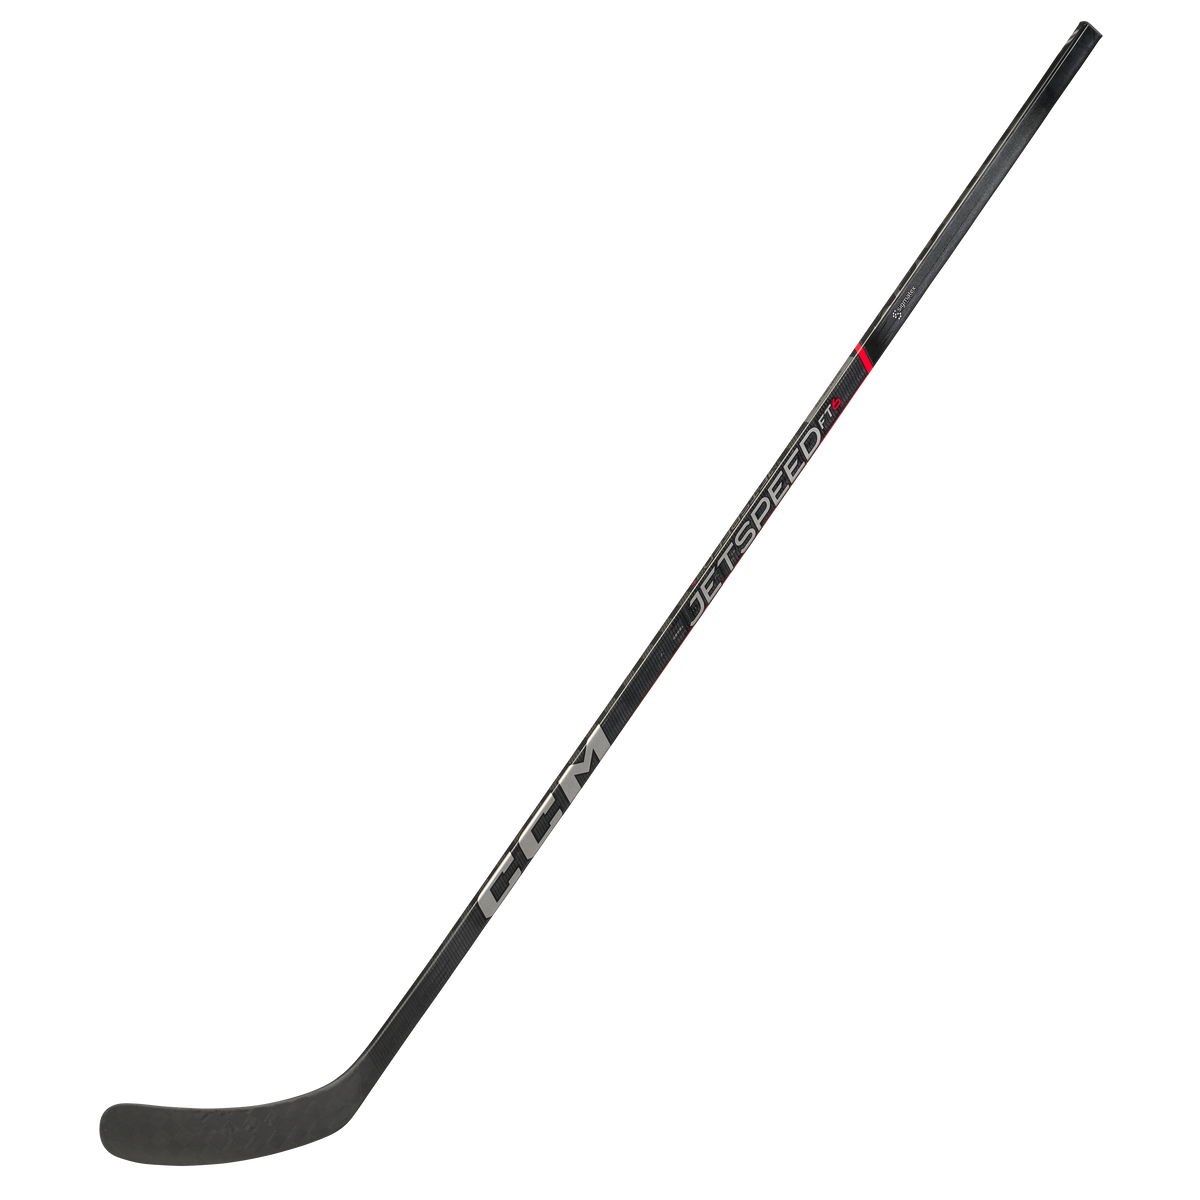 CCM JetSpeed FT6 Senior Hockey Stick